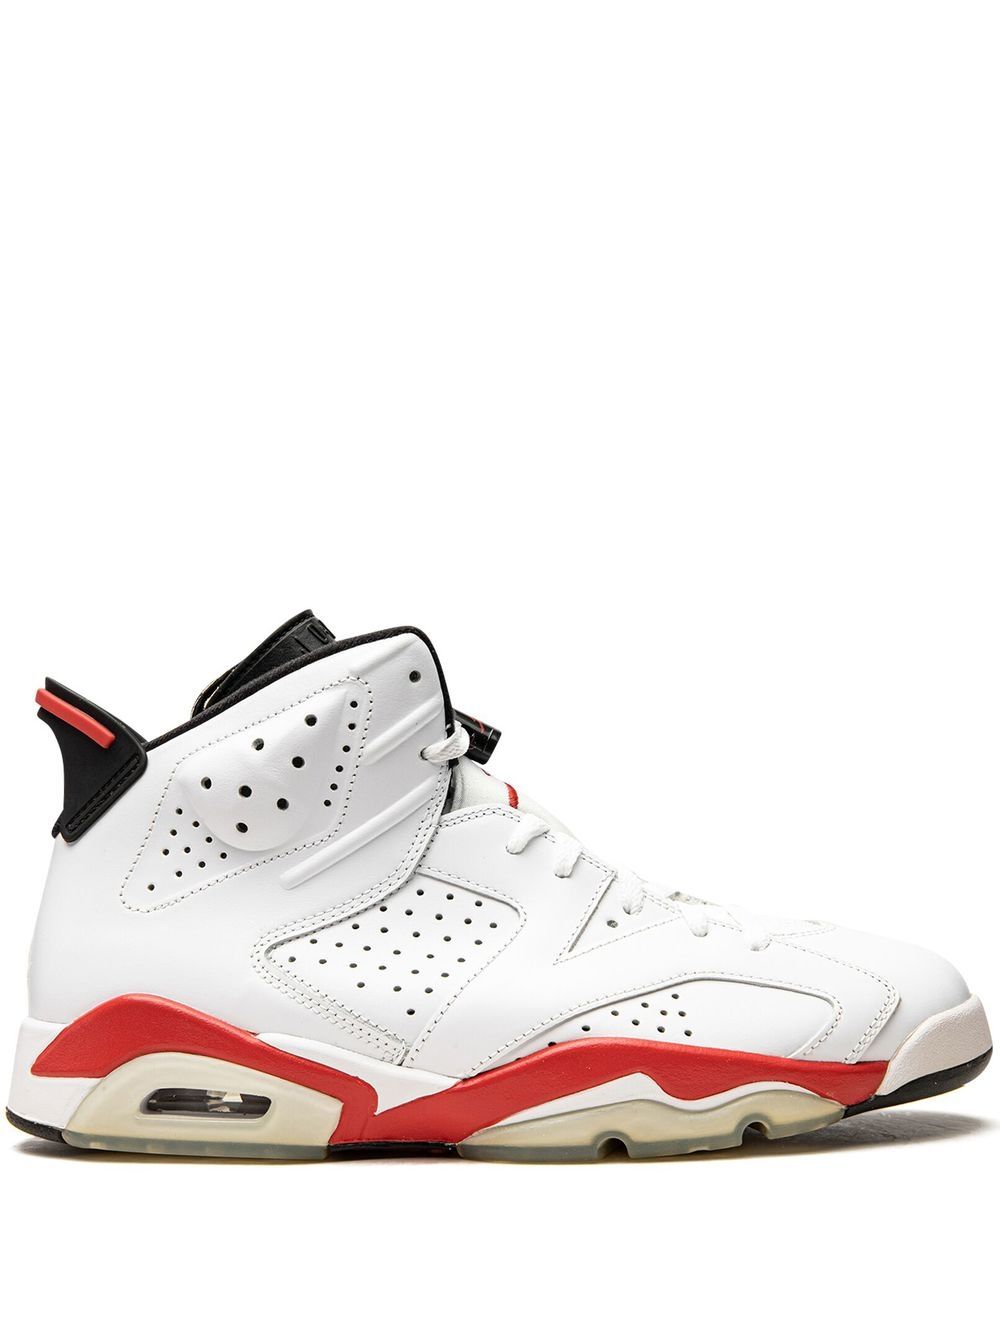 Jordan Air Jordan 6 "White/Infrared - Infrared Pack" sneakers